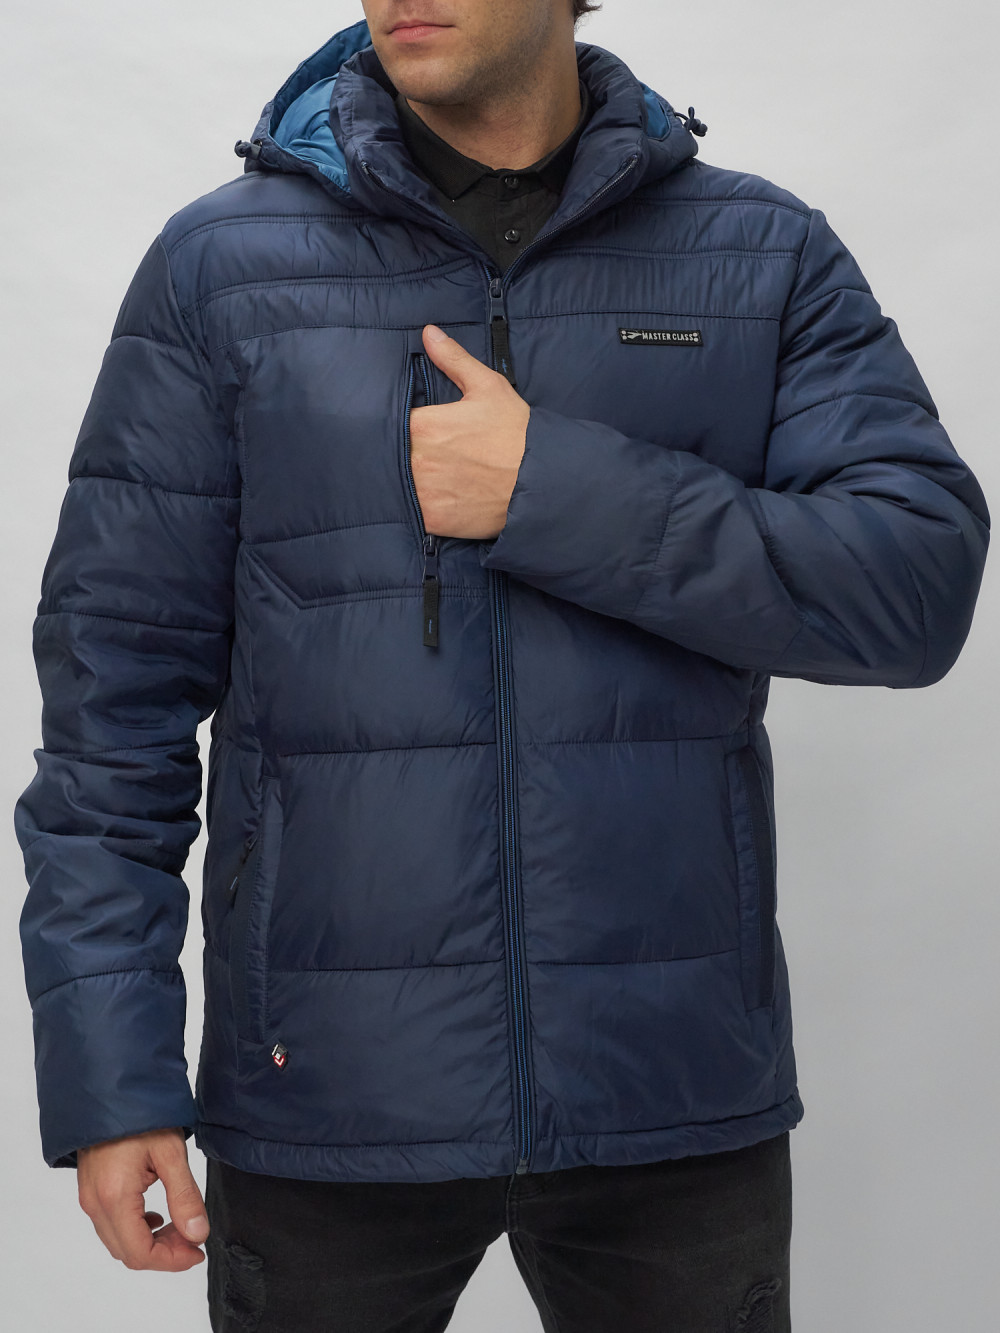 Купить куртку мужскую спортивную весеннюю оптом от производителя недорого в Москве 62190TS 1